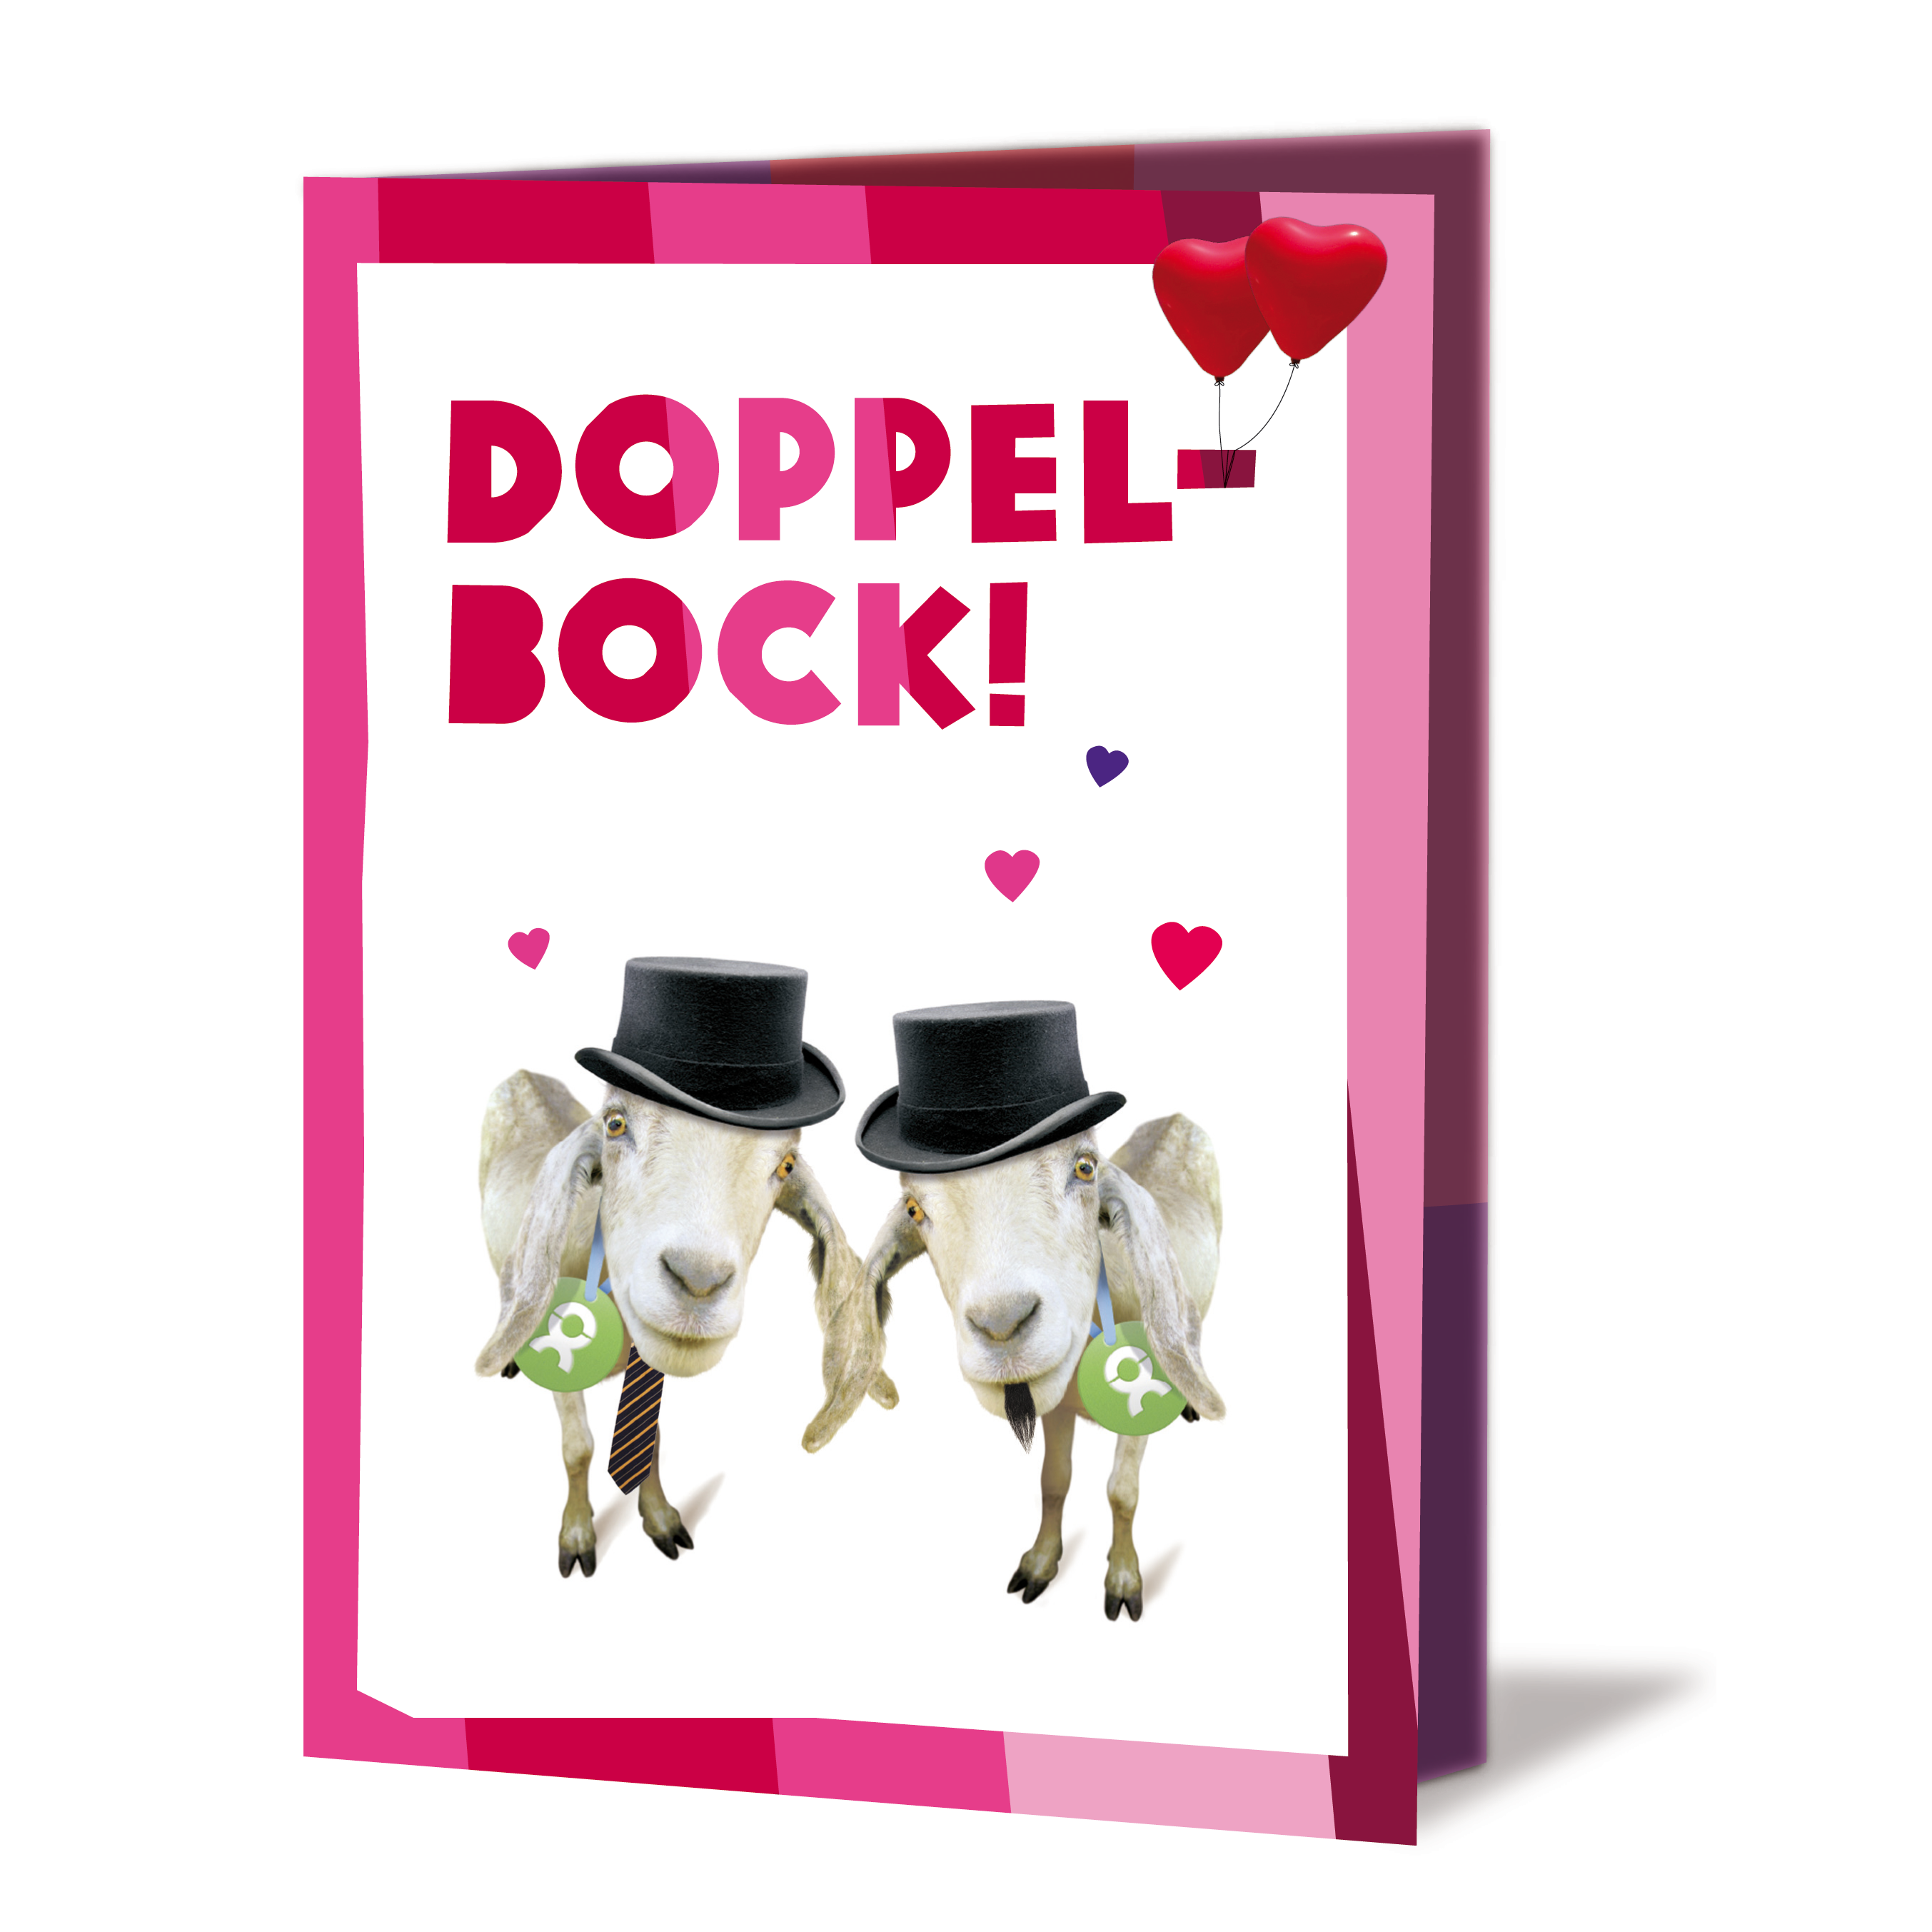 Geschenkkarte mit Aufschrift: Doppelbock! Darunter Ziegenpaar mit Zylinder, Krawatte und Bärtchen, umgeben von Herzen und zwei roten, herzförmigen Ballons